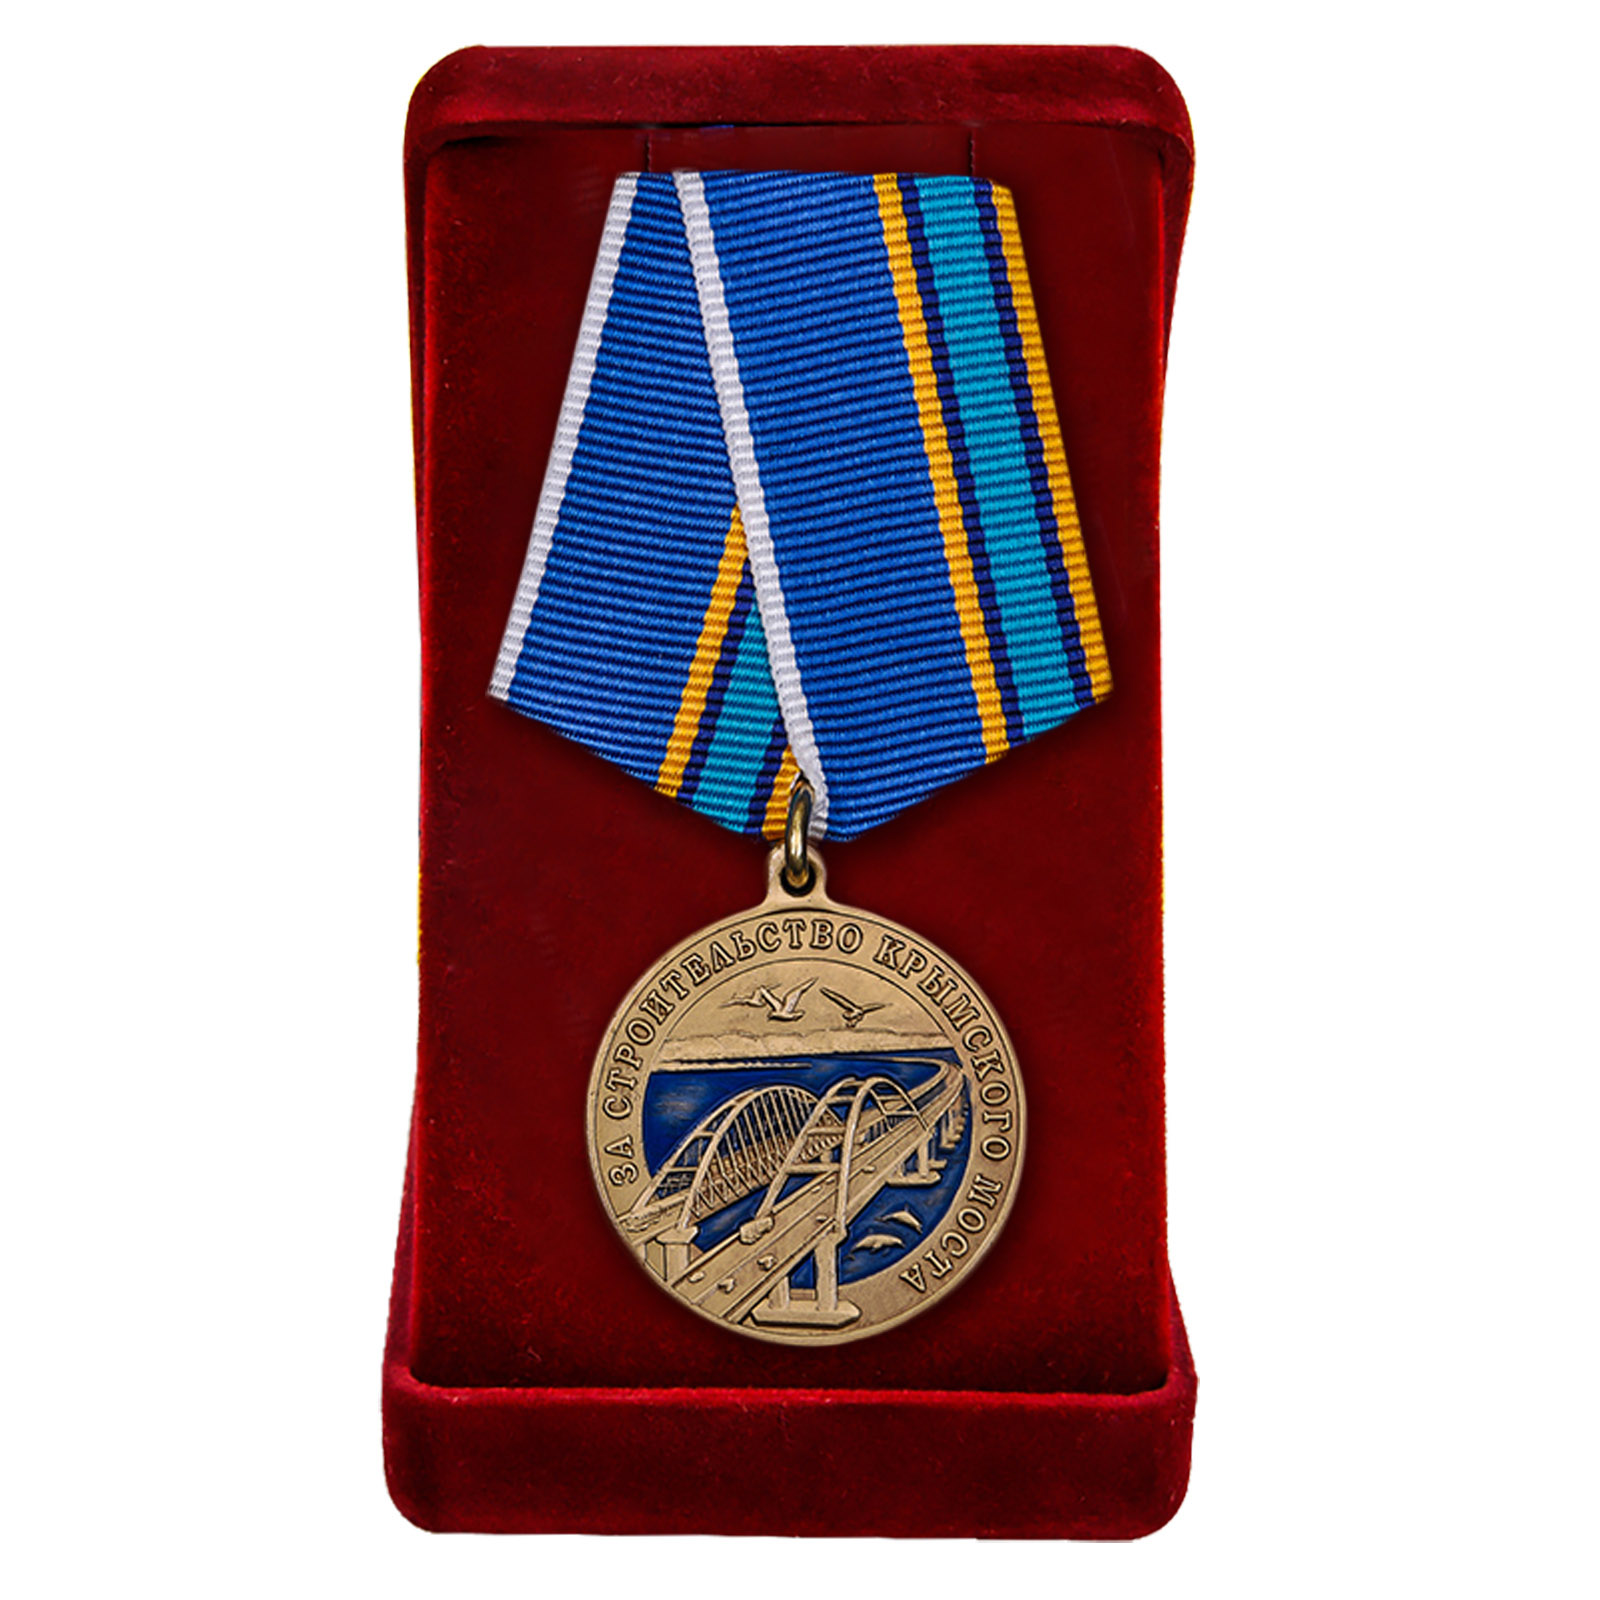 Купить памятную медаль "За строительство Крымского моста" по лучшей цене